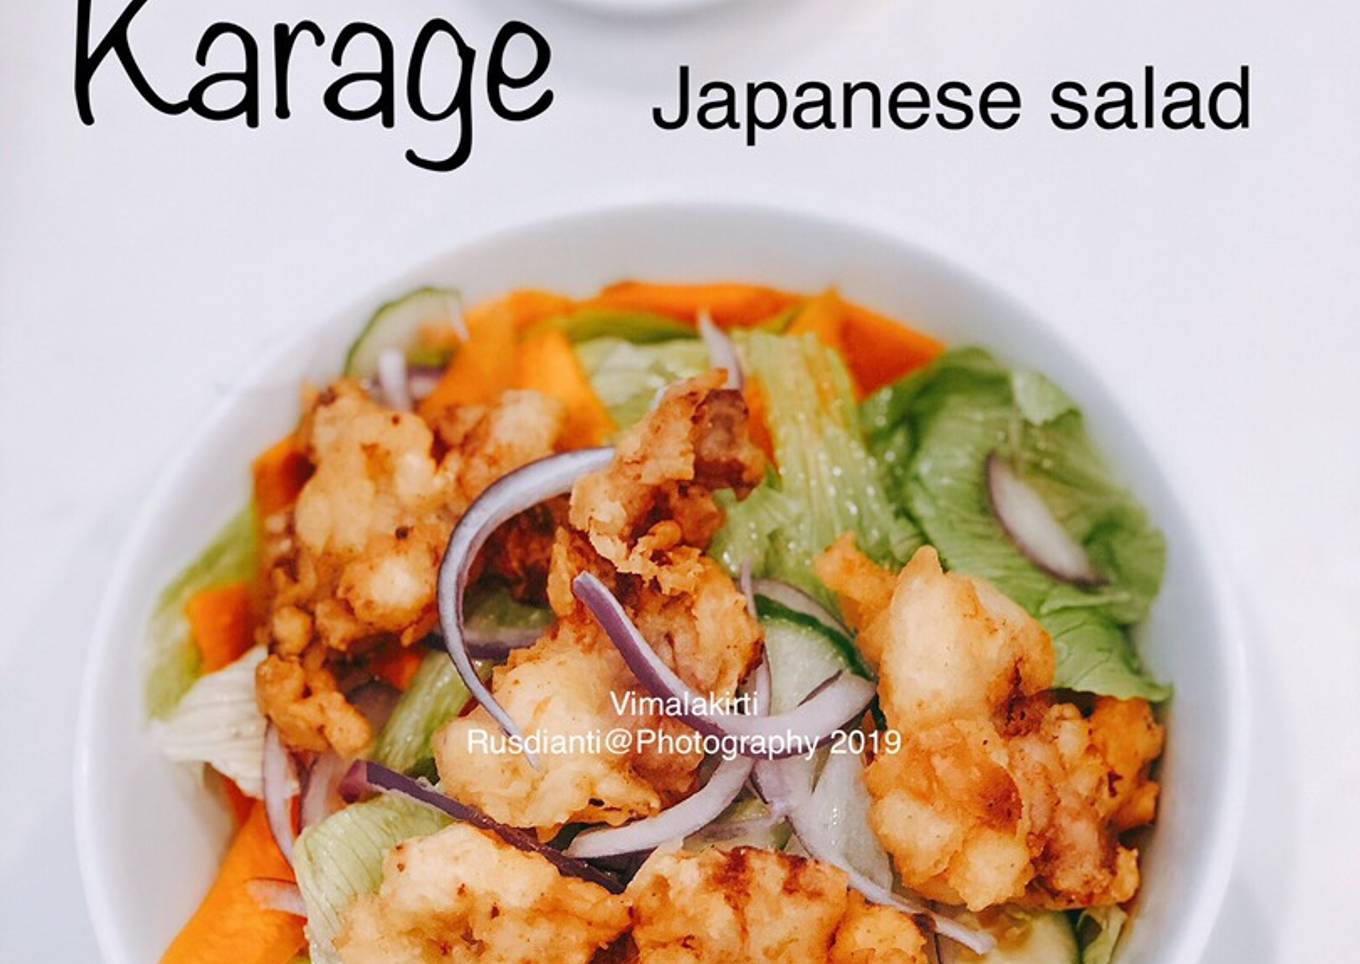 Chicken karage japanese salad